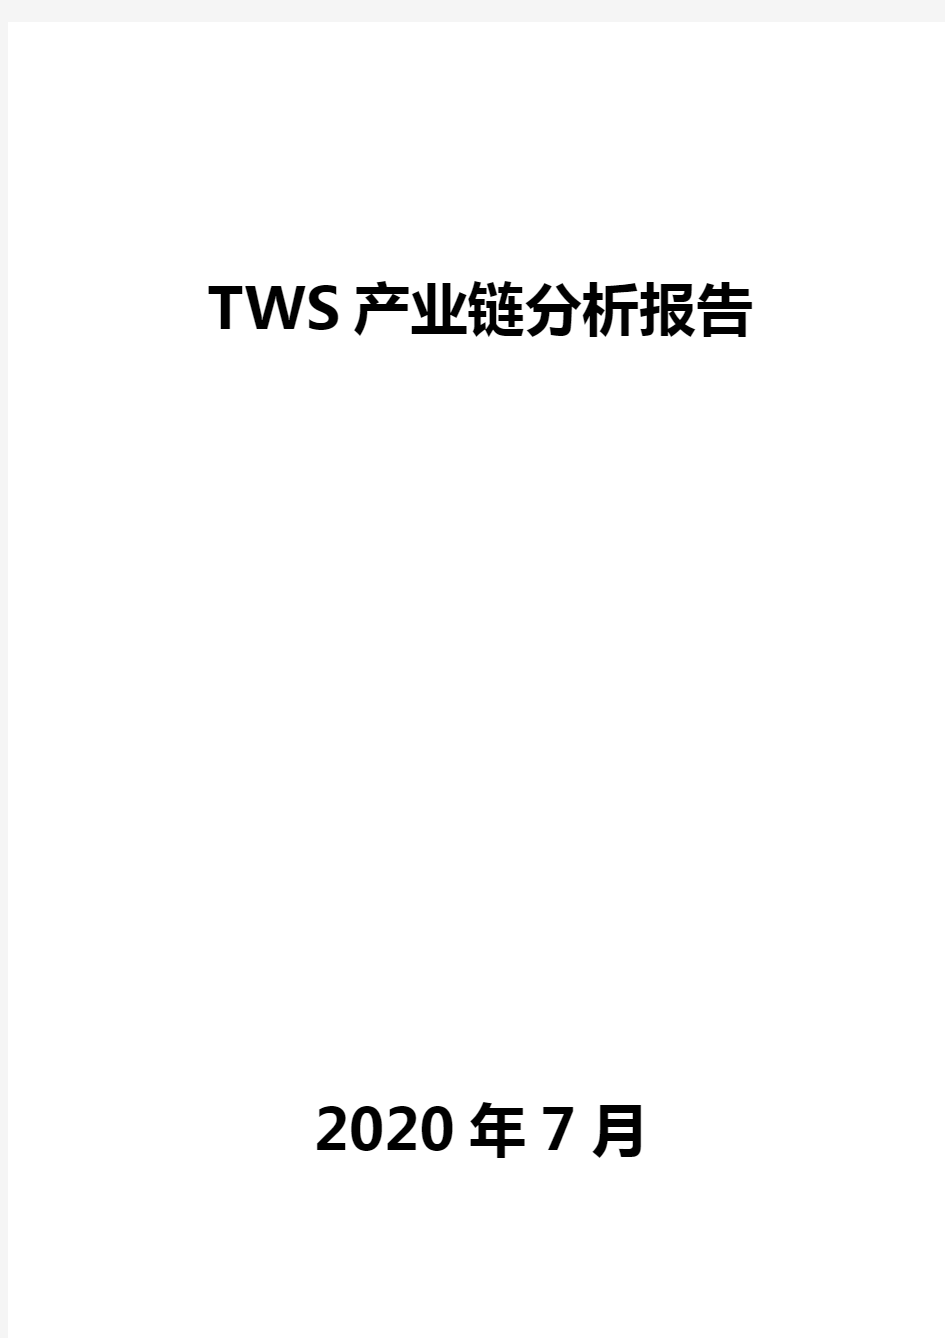 TWS产业链分析报告